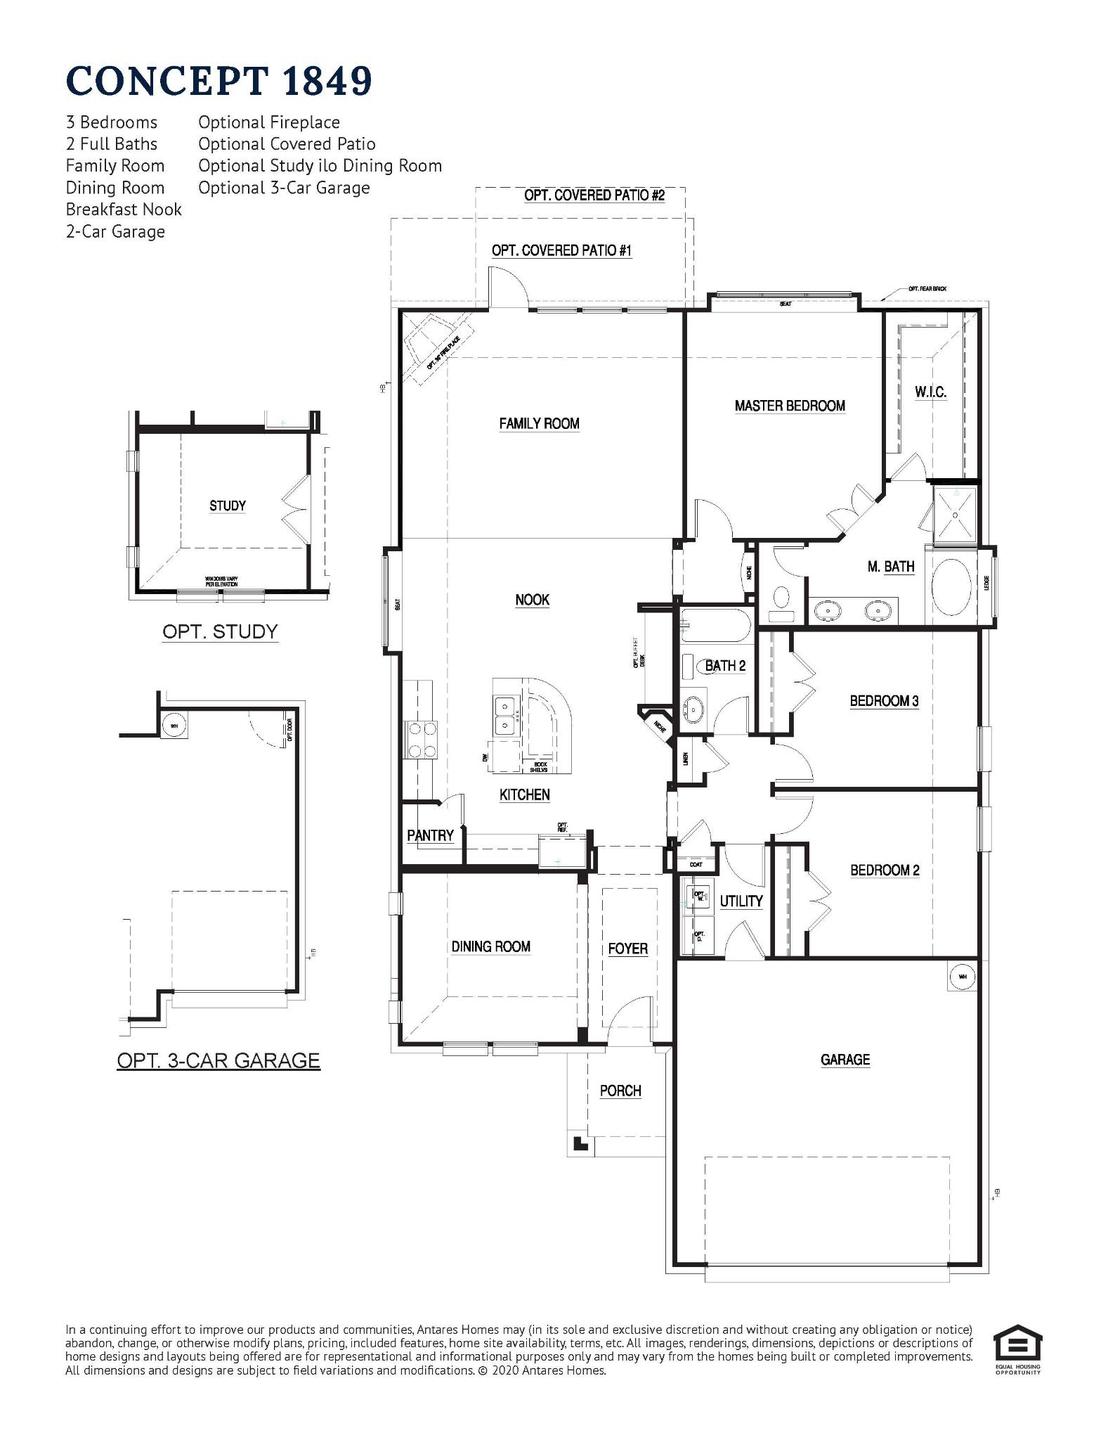 Concept 1849 New Home Floor Plan